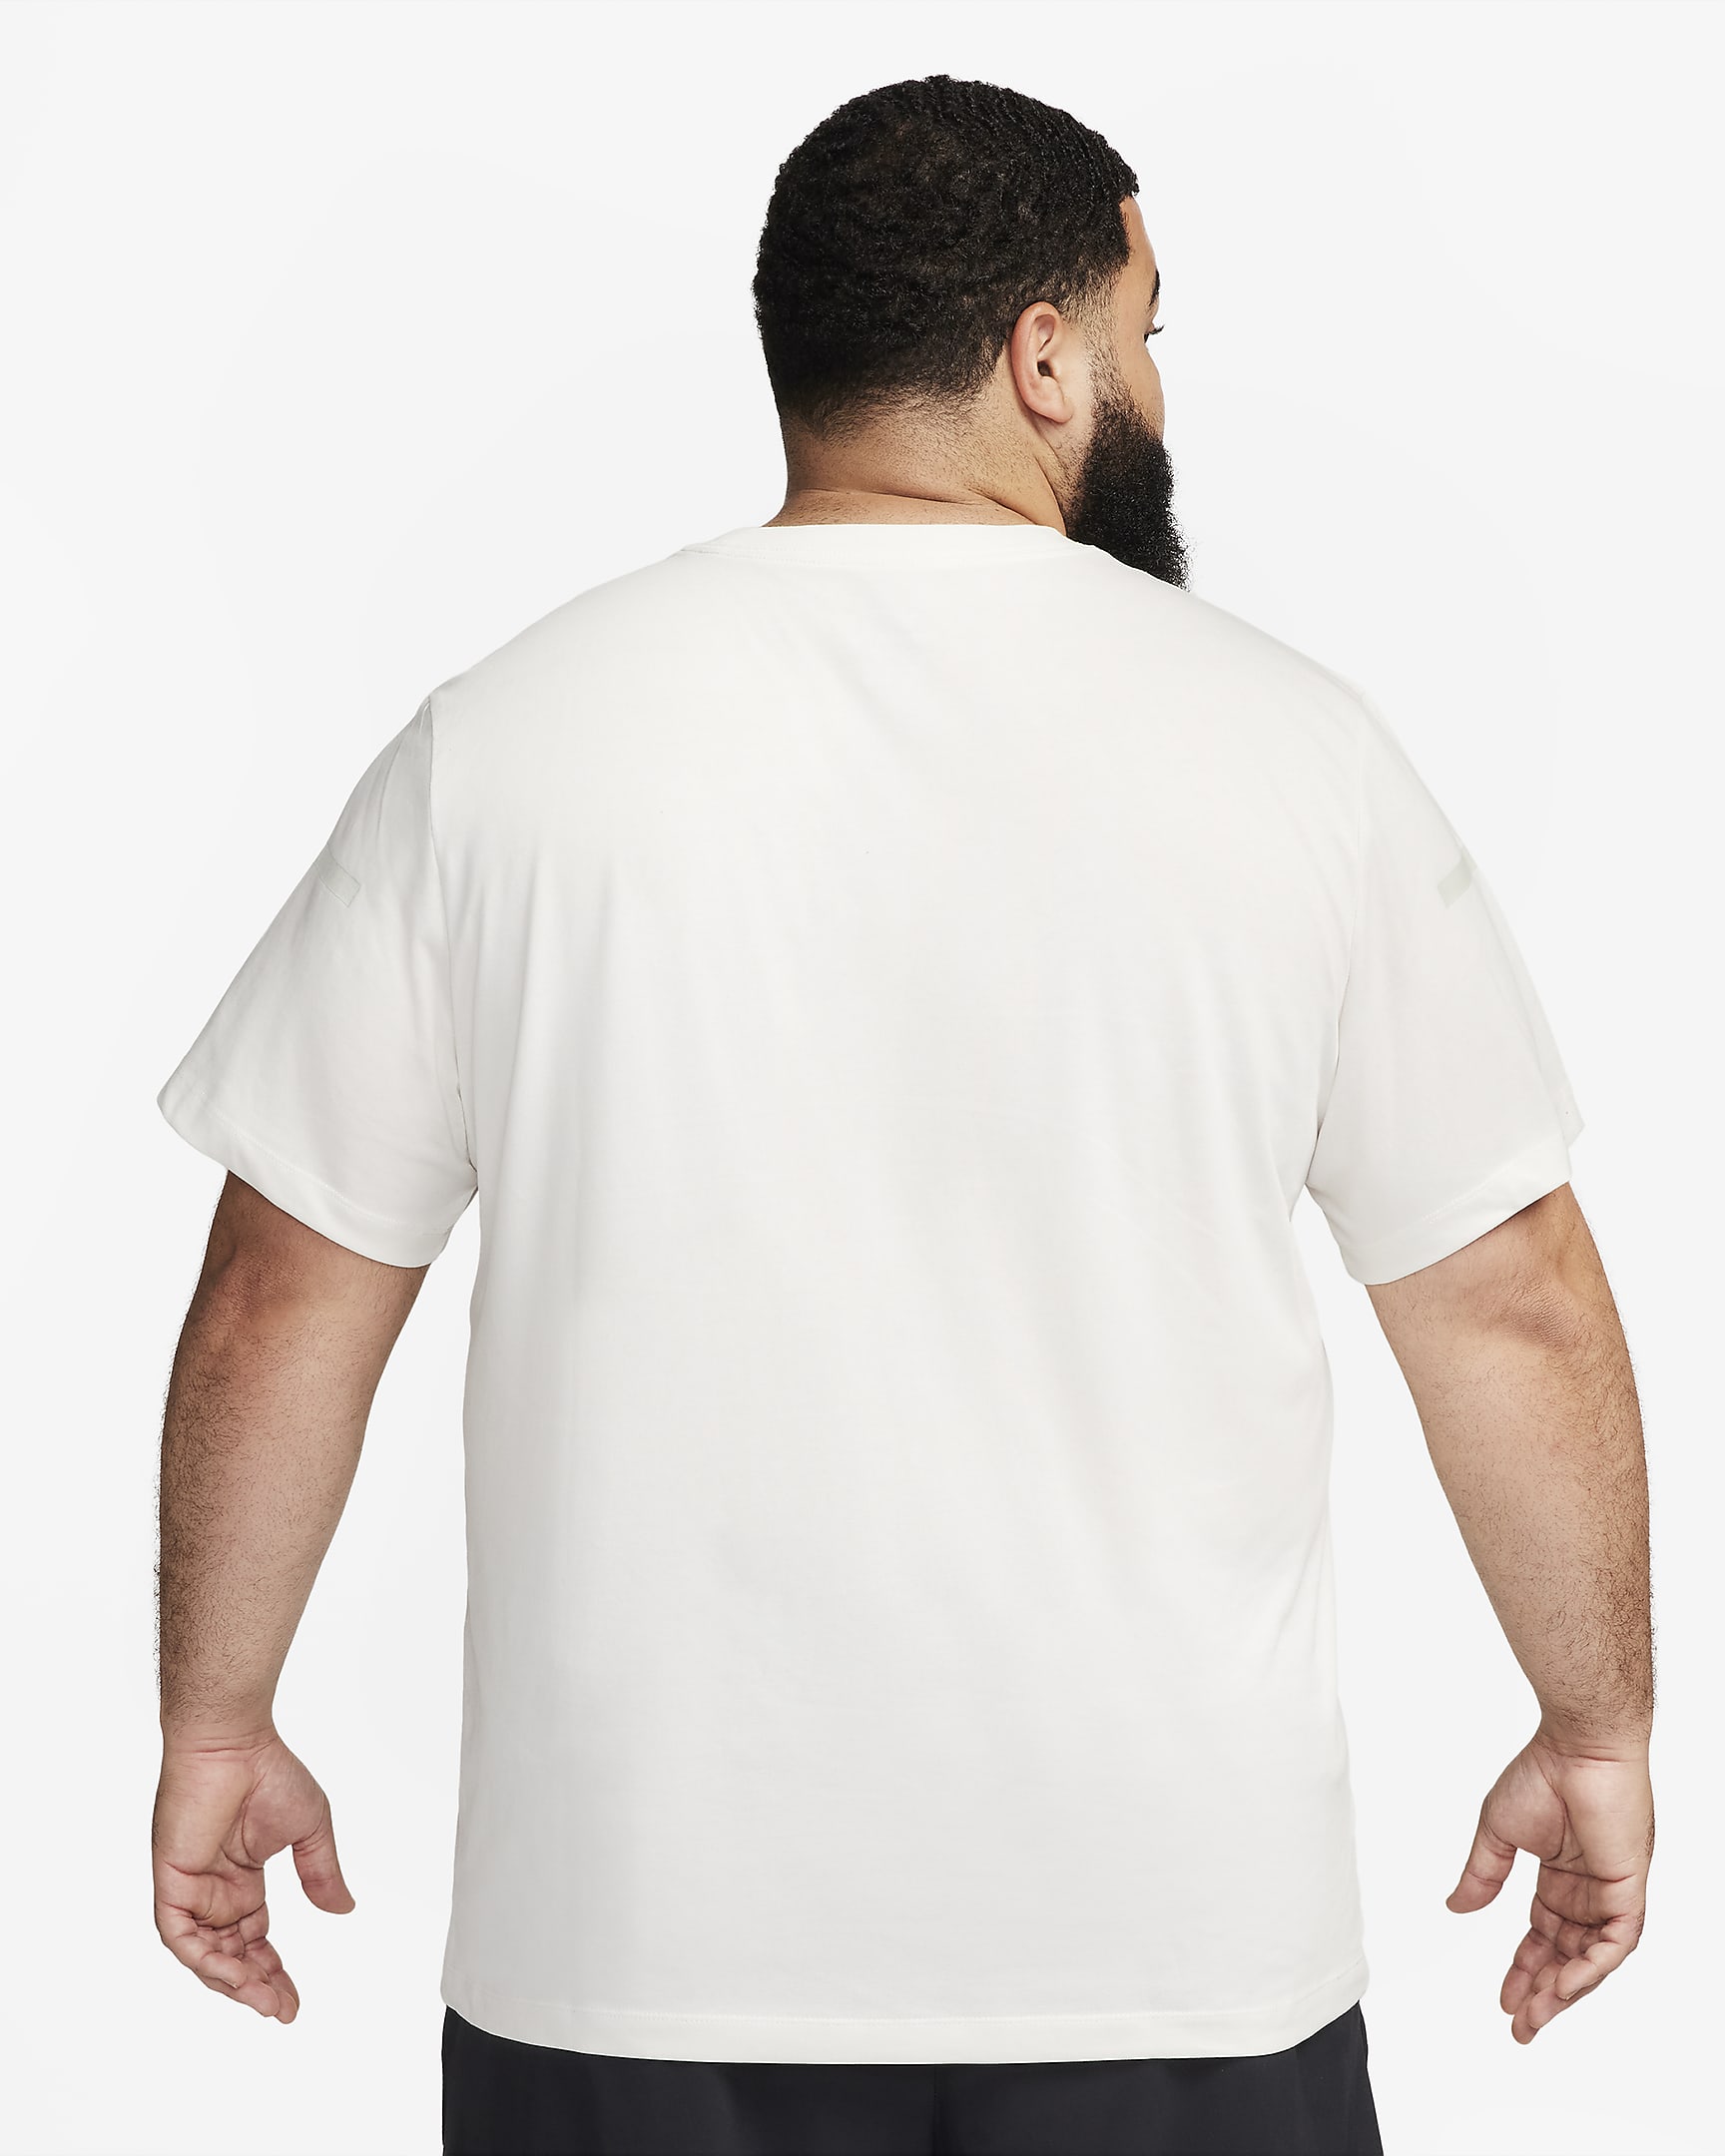 Nike Dri-FIT Men's Fitness T-Shirt. Nike CZ